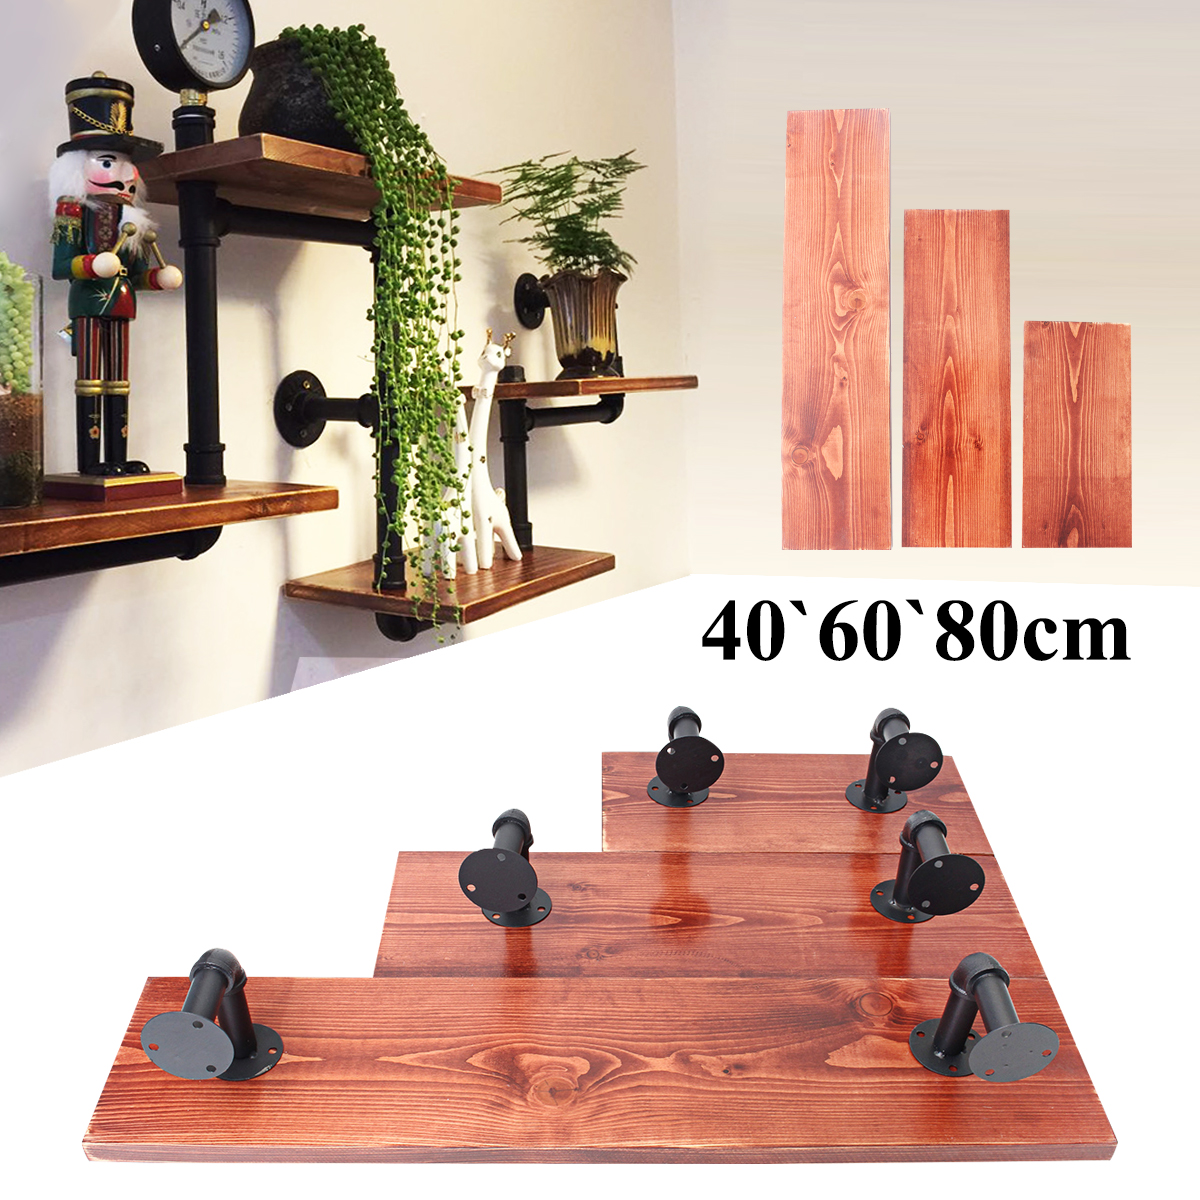 3Pcs-406080cm-Wooden-Board-Shelves-Wall-Mount-Floating-Shelf-Display-Bracket-Waterproof-Decor-1390599-1